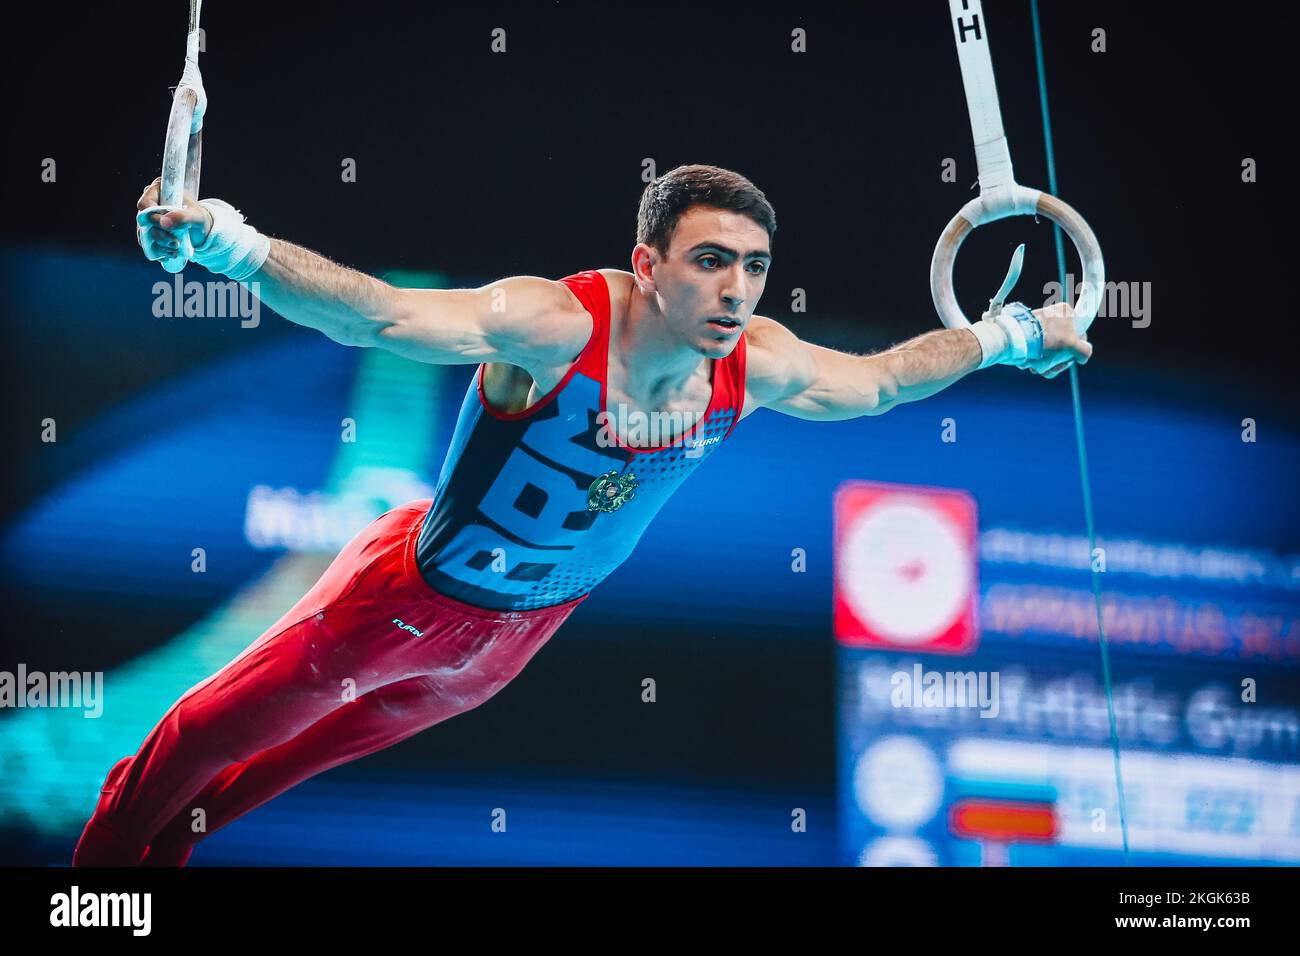 Szczecin, Pologne, 10 avril 2019: Tovmasyan Artur est en compétition sur les anneaux lors des championnats européens de gymnastique artistique Banque D'Images